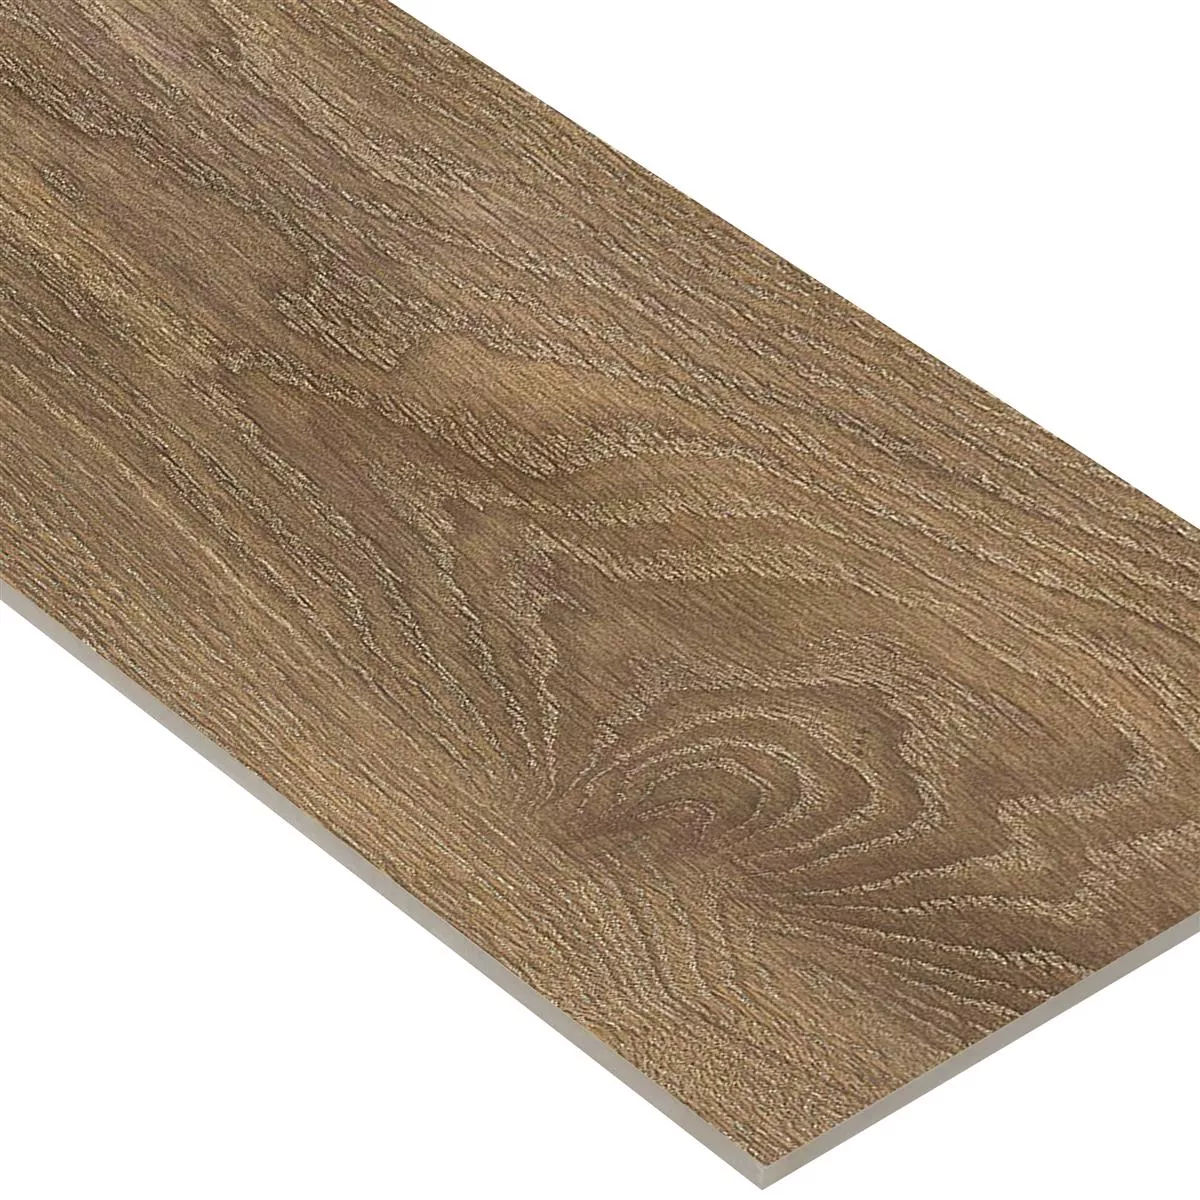 Płytki Podłogowe Regina Wygląd Drewna 20x120cm Natural